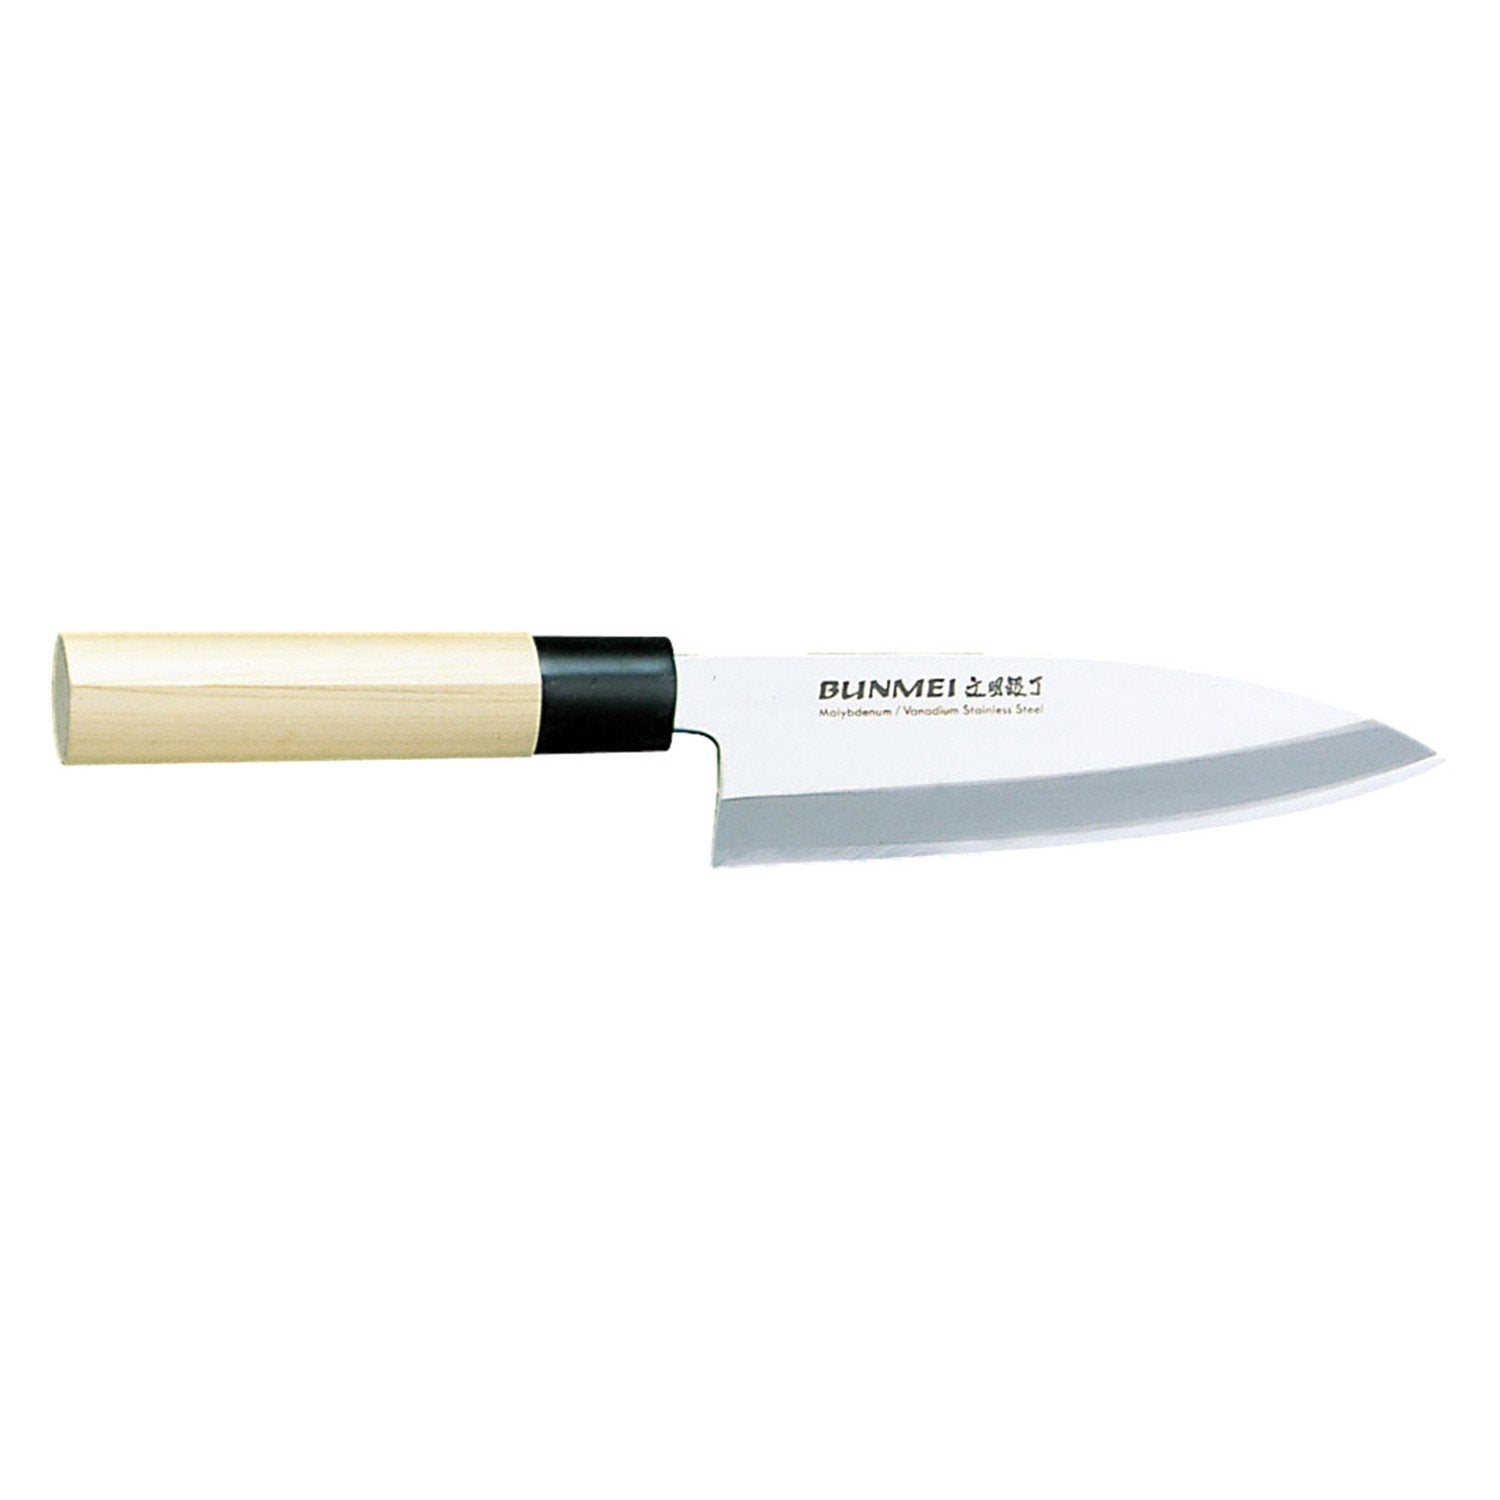 Global Bunmei deba kniv 1801/135 mm